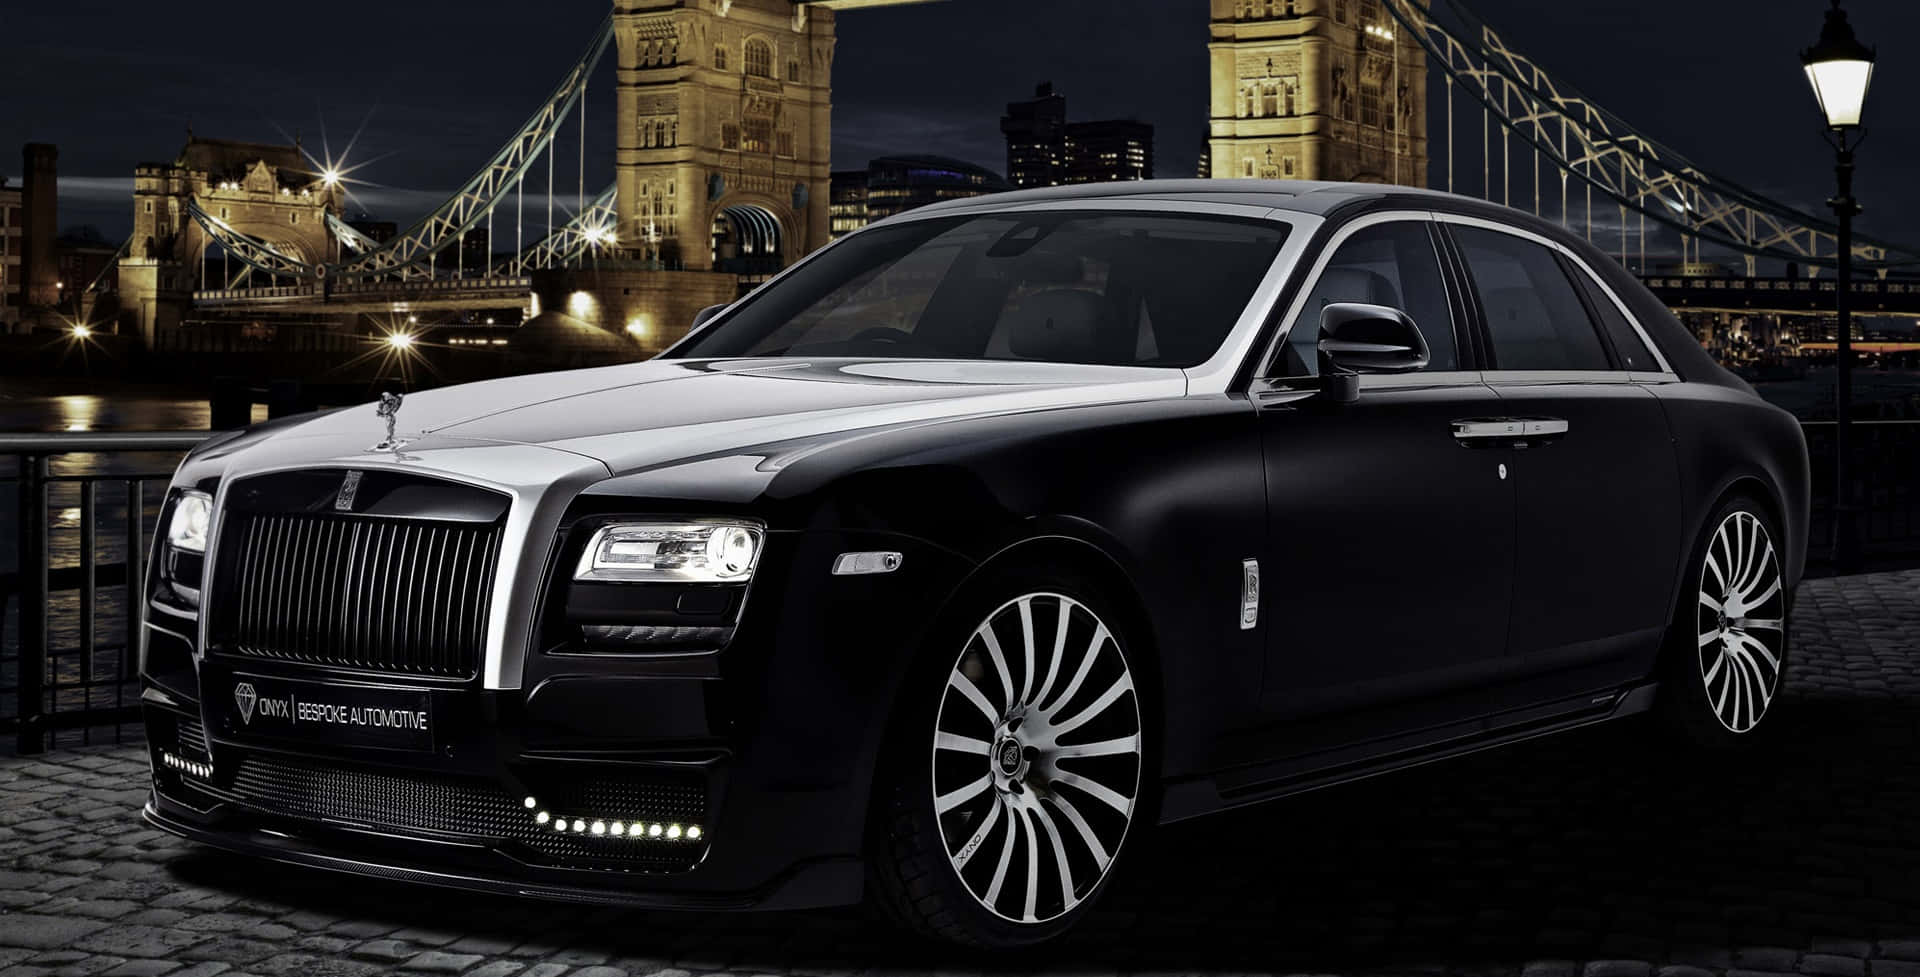 The Elegant Display Of Luxury - Rolls Royce Ghost Wallpaper